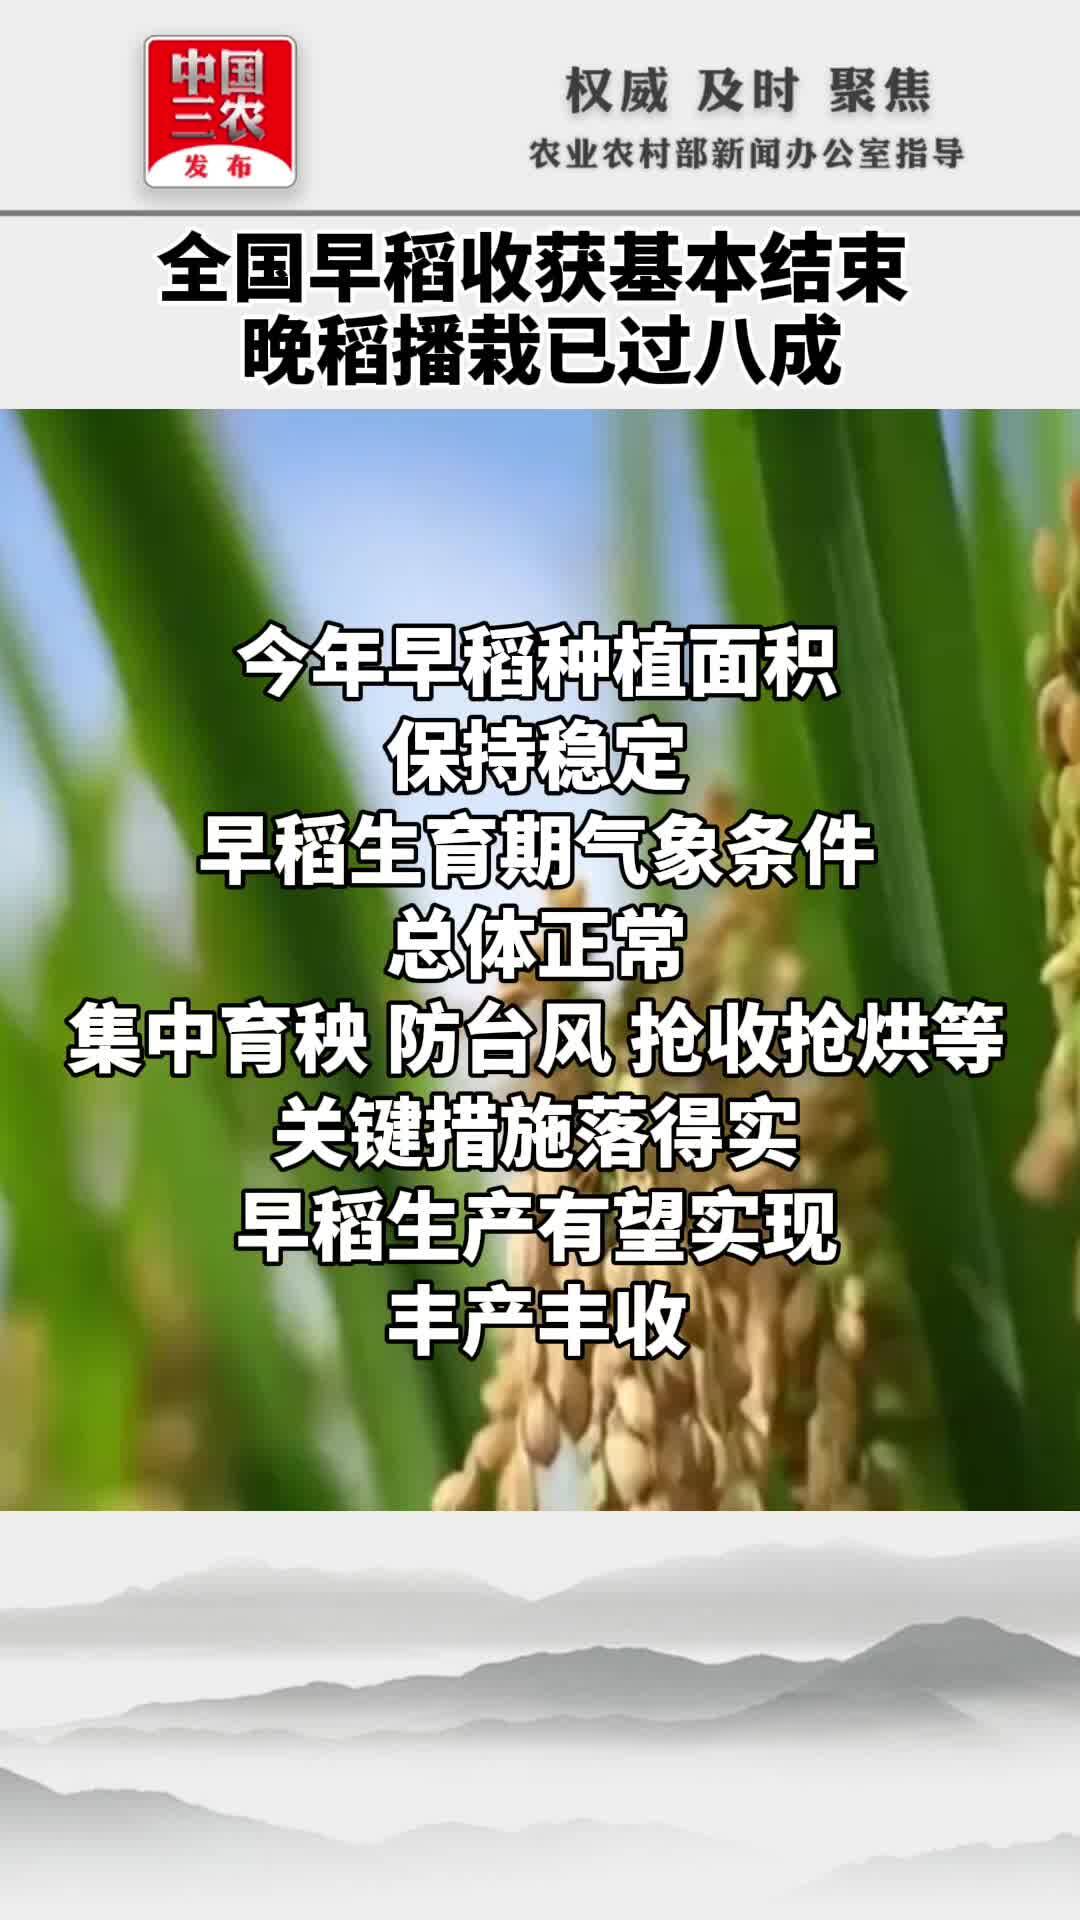 全国早稻收获基本结束 晚稻播栽已过八成